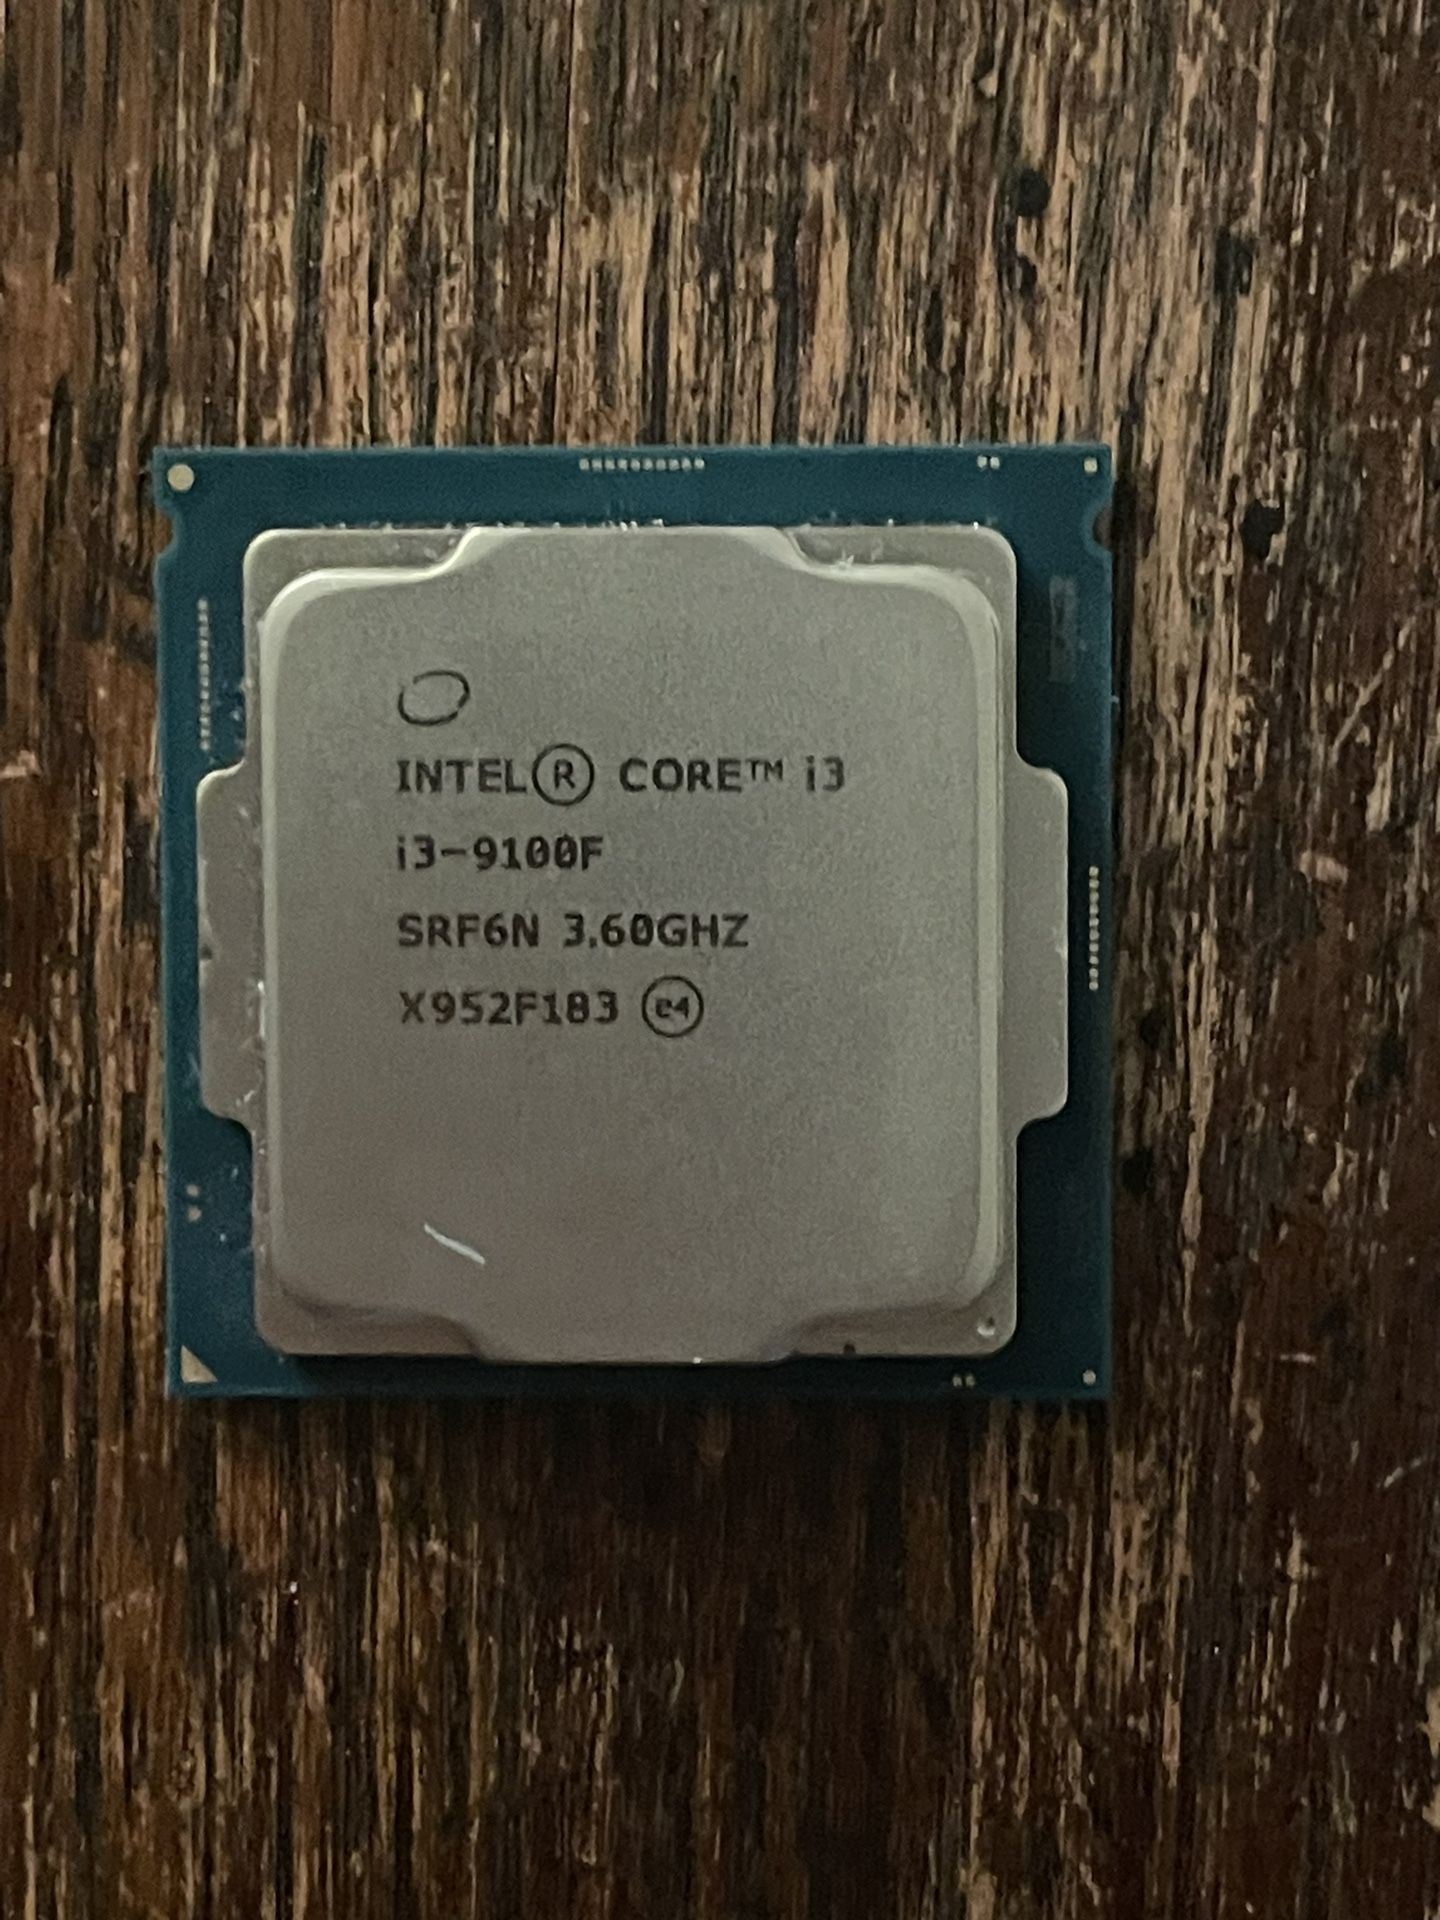 Intel Core I3-9100F